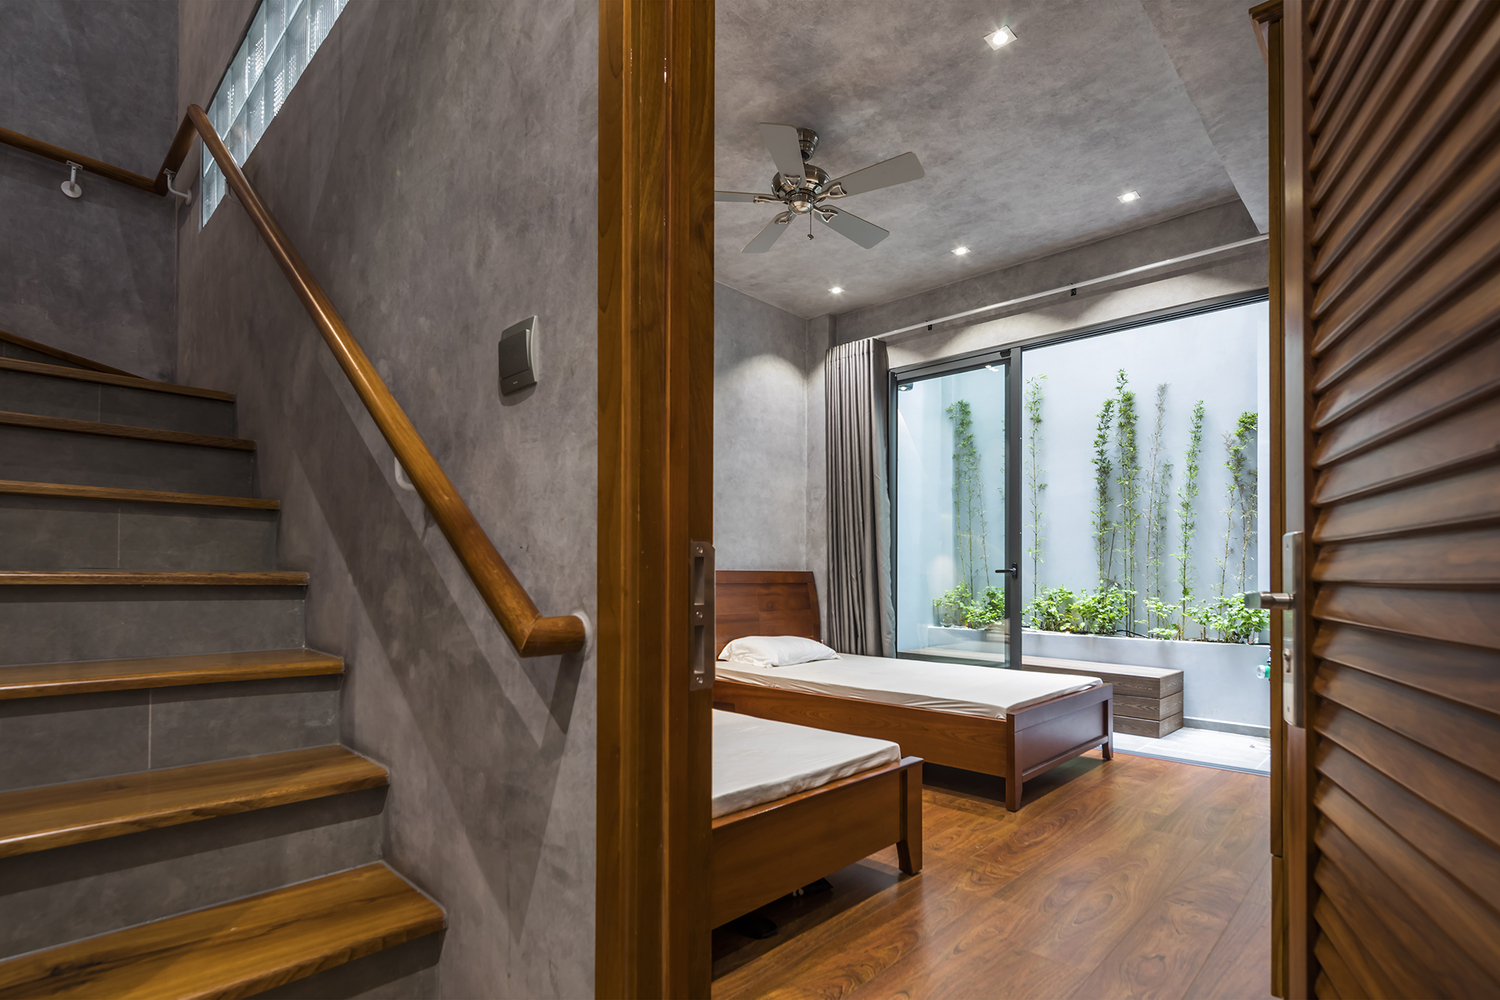 Thiết kế nội thất phòng ngủ tối giản với sàn gỗ ấm áp và cửa kính cao rộng cho phép ánh sáng tự nhiên ngập tràn không gian nhà.